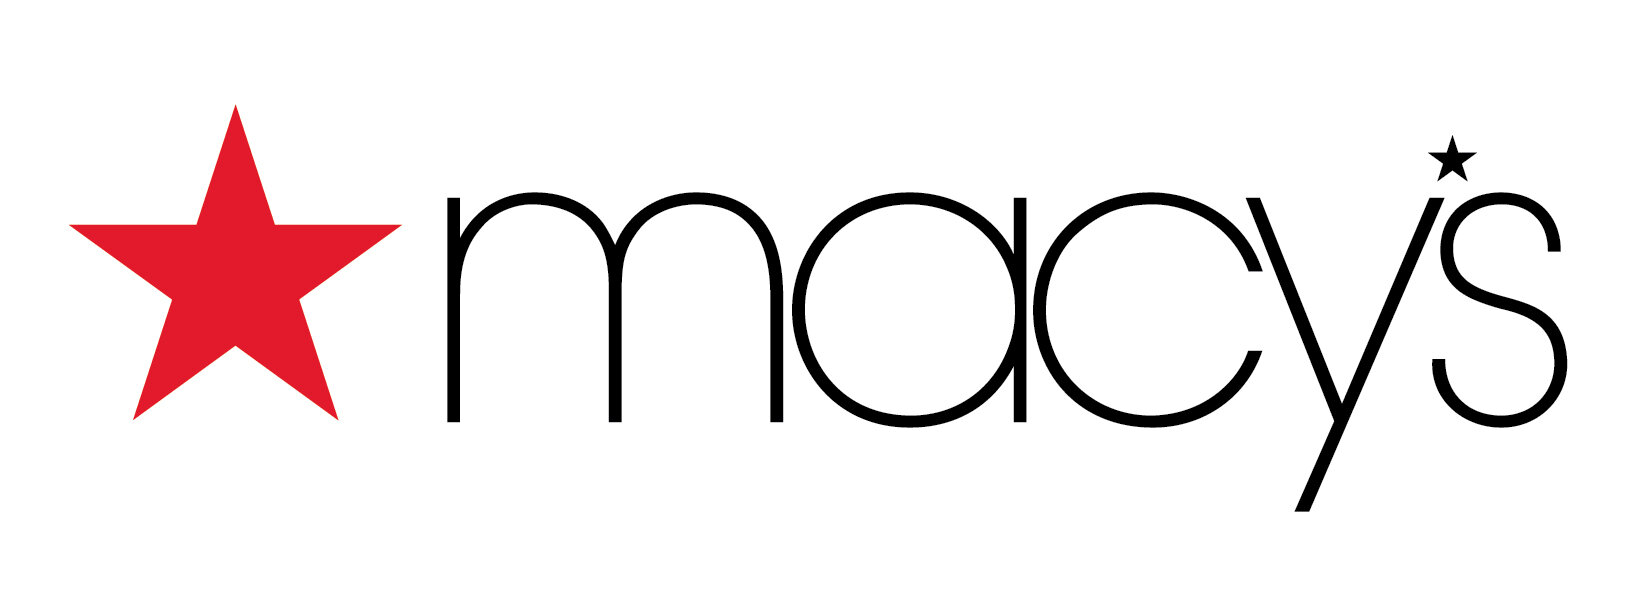 macys-logo-on-white_high.jpg